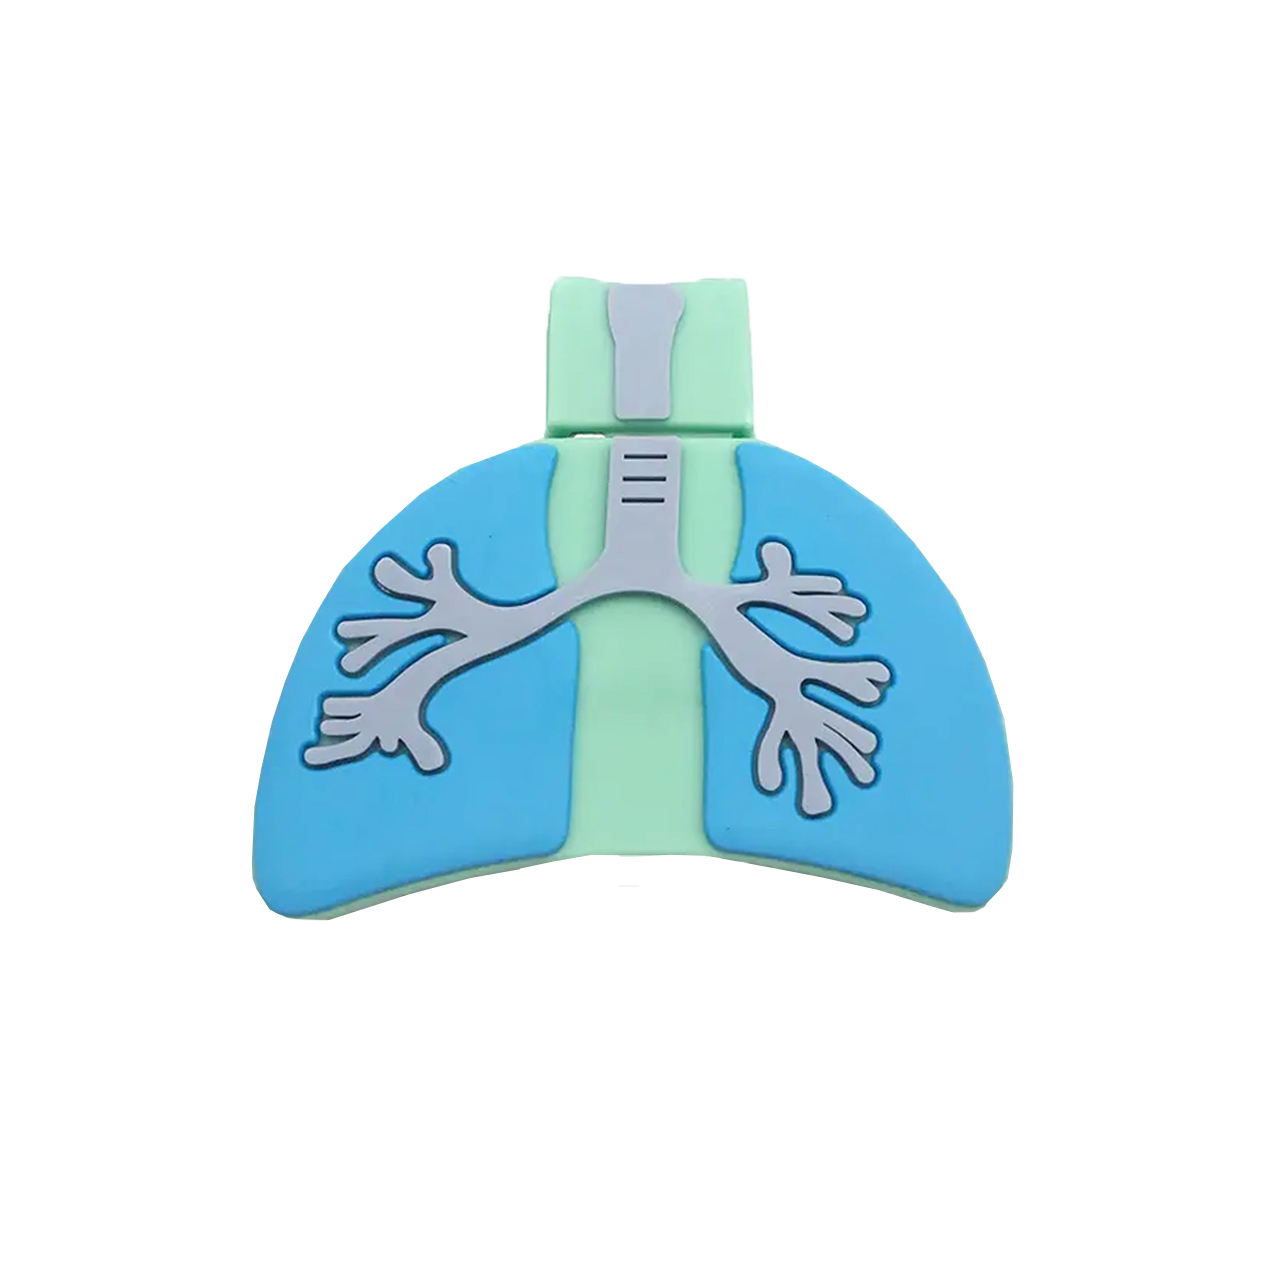 فلش مموری دایا دیتا طرح Lungs مدل PF1101 ظرفیت 32 گیگابایت